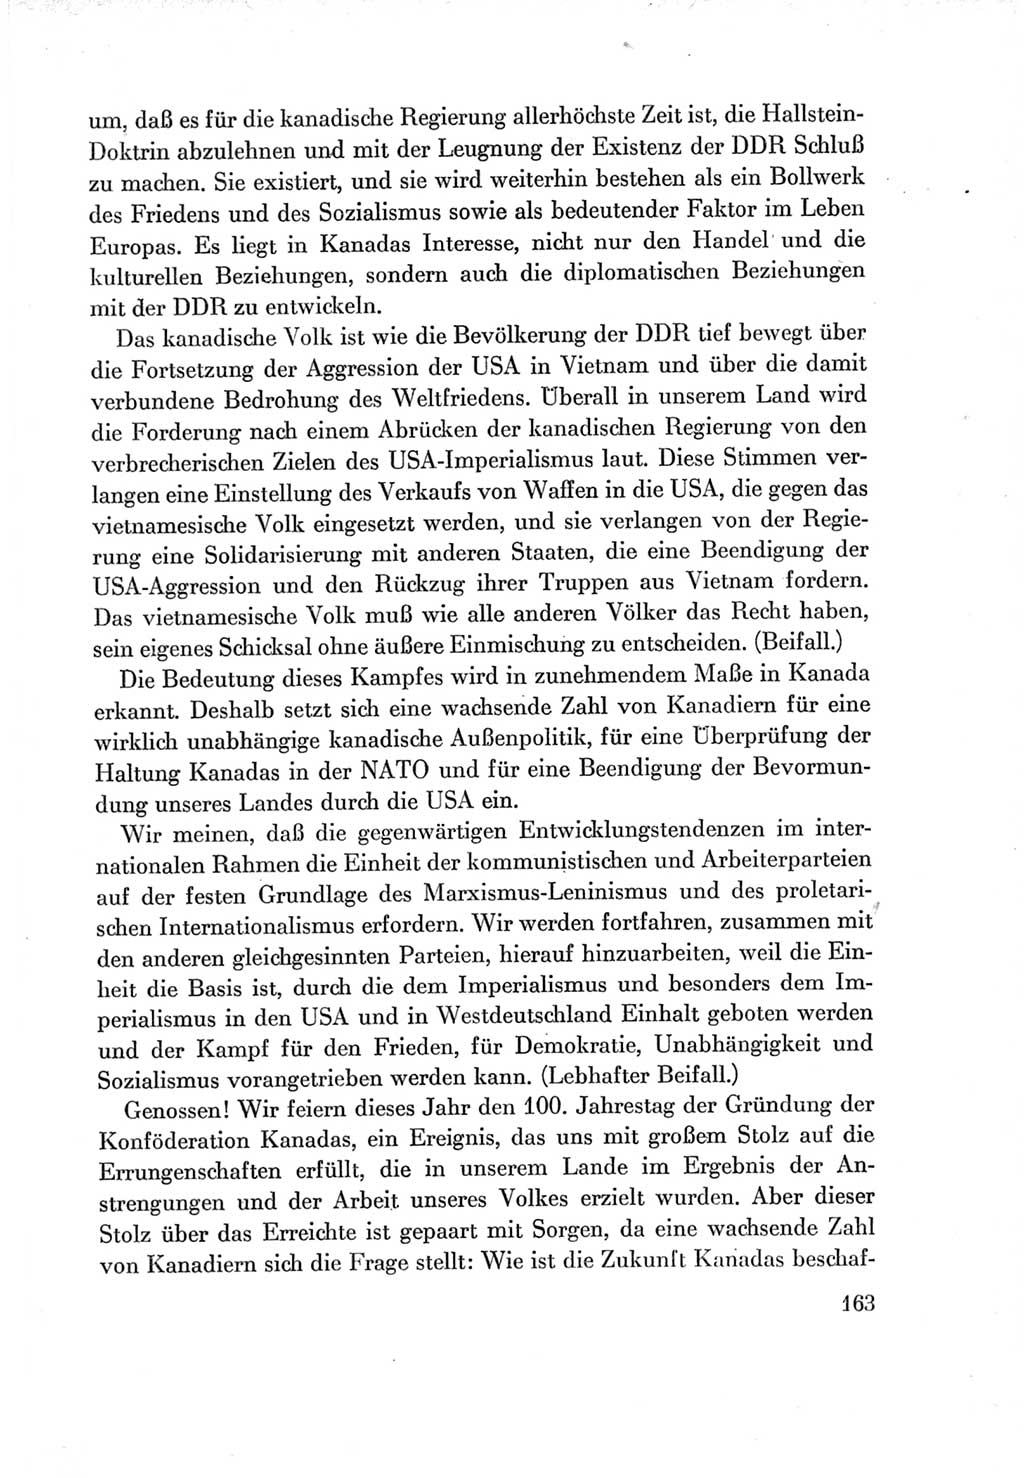 Protokoll der Verhandlungen des Ⅶ. Parteitages der Sozialistischen Einheitspartei Deutschlands (SED) [Deutsche Demokratische Republik (DDR)] 1967, Band Ⅱ, Seite 163 (Prot. Verh. Ⅶ. PT SED DDR 1967, Bd. Ⅱ, S. 163)